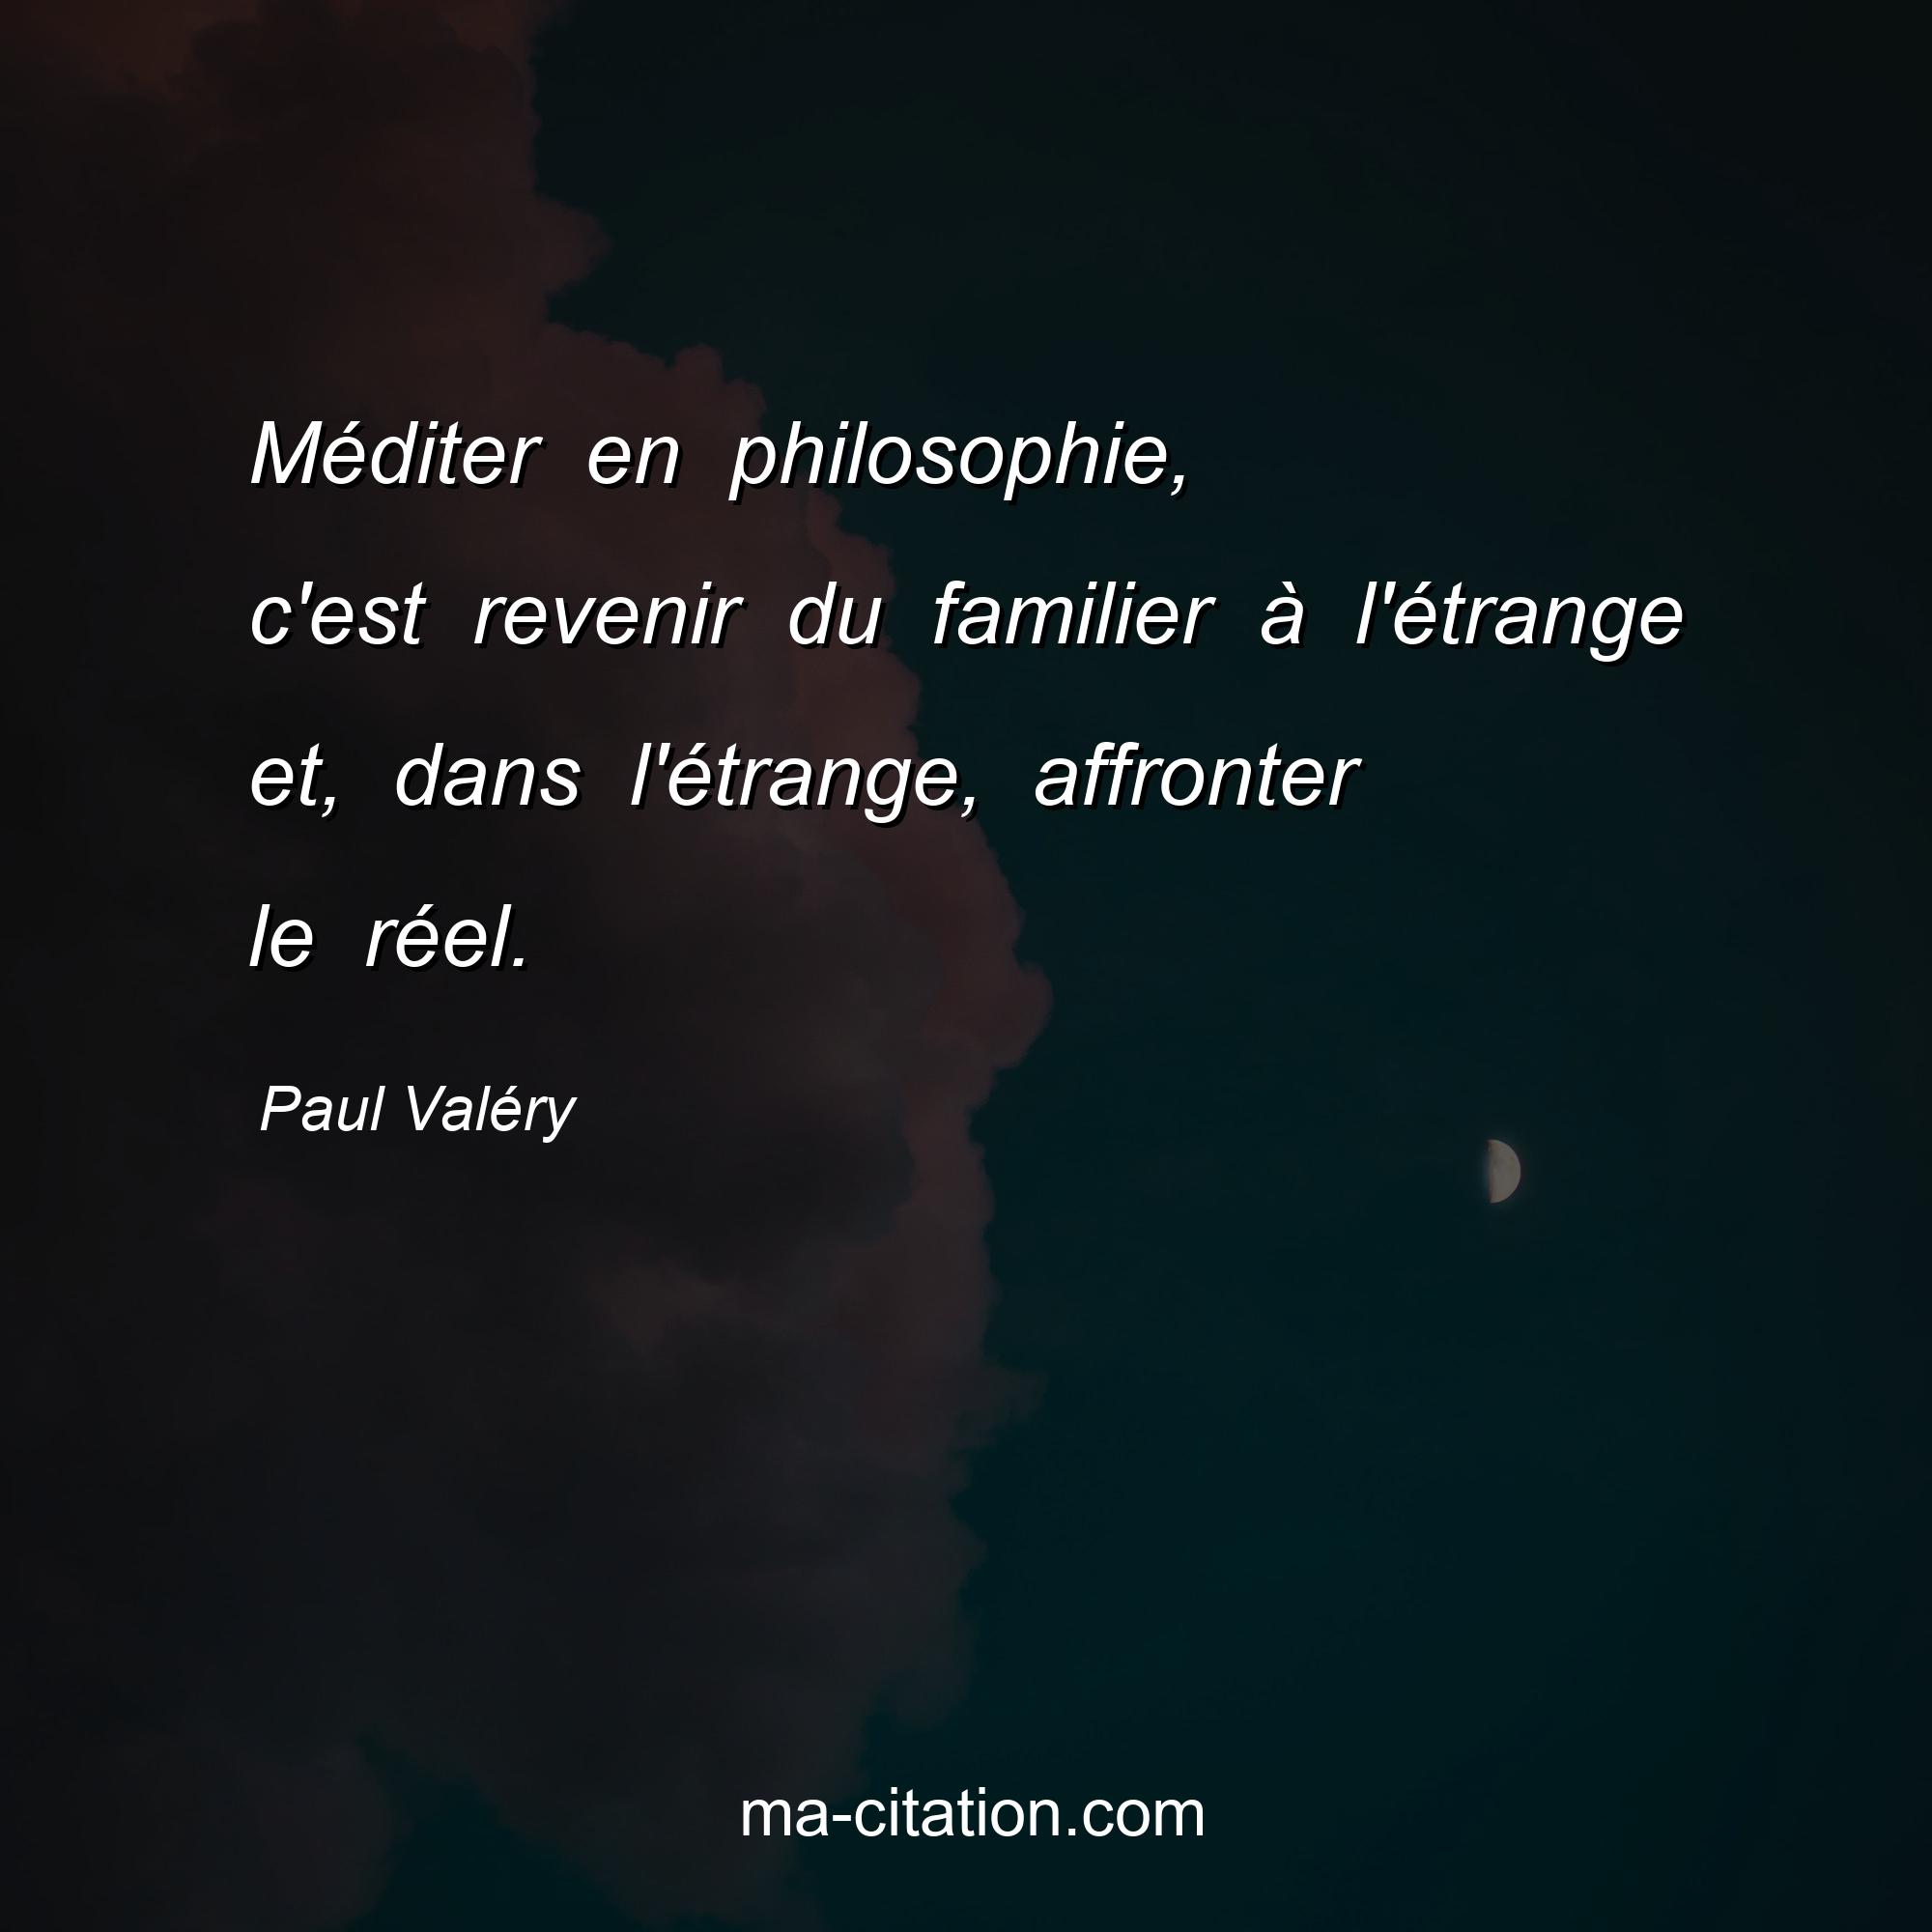 Paul Valéry : Méditer en philosophie, c'est revenir du familier à l'étrange et, dans l'étrange, affronter le réel.